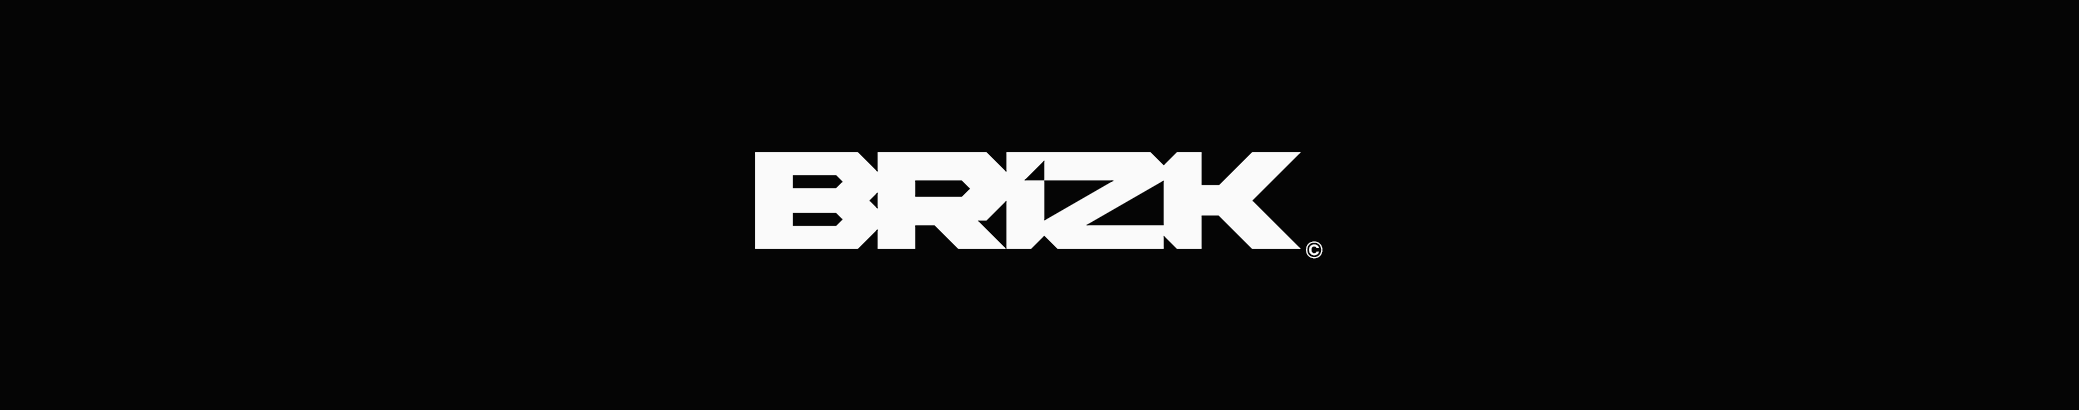 BRIZK ©'s profile banner